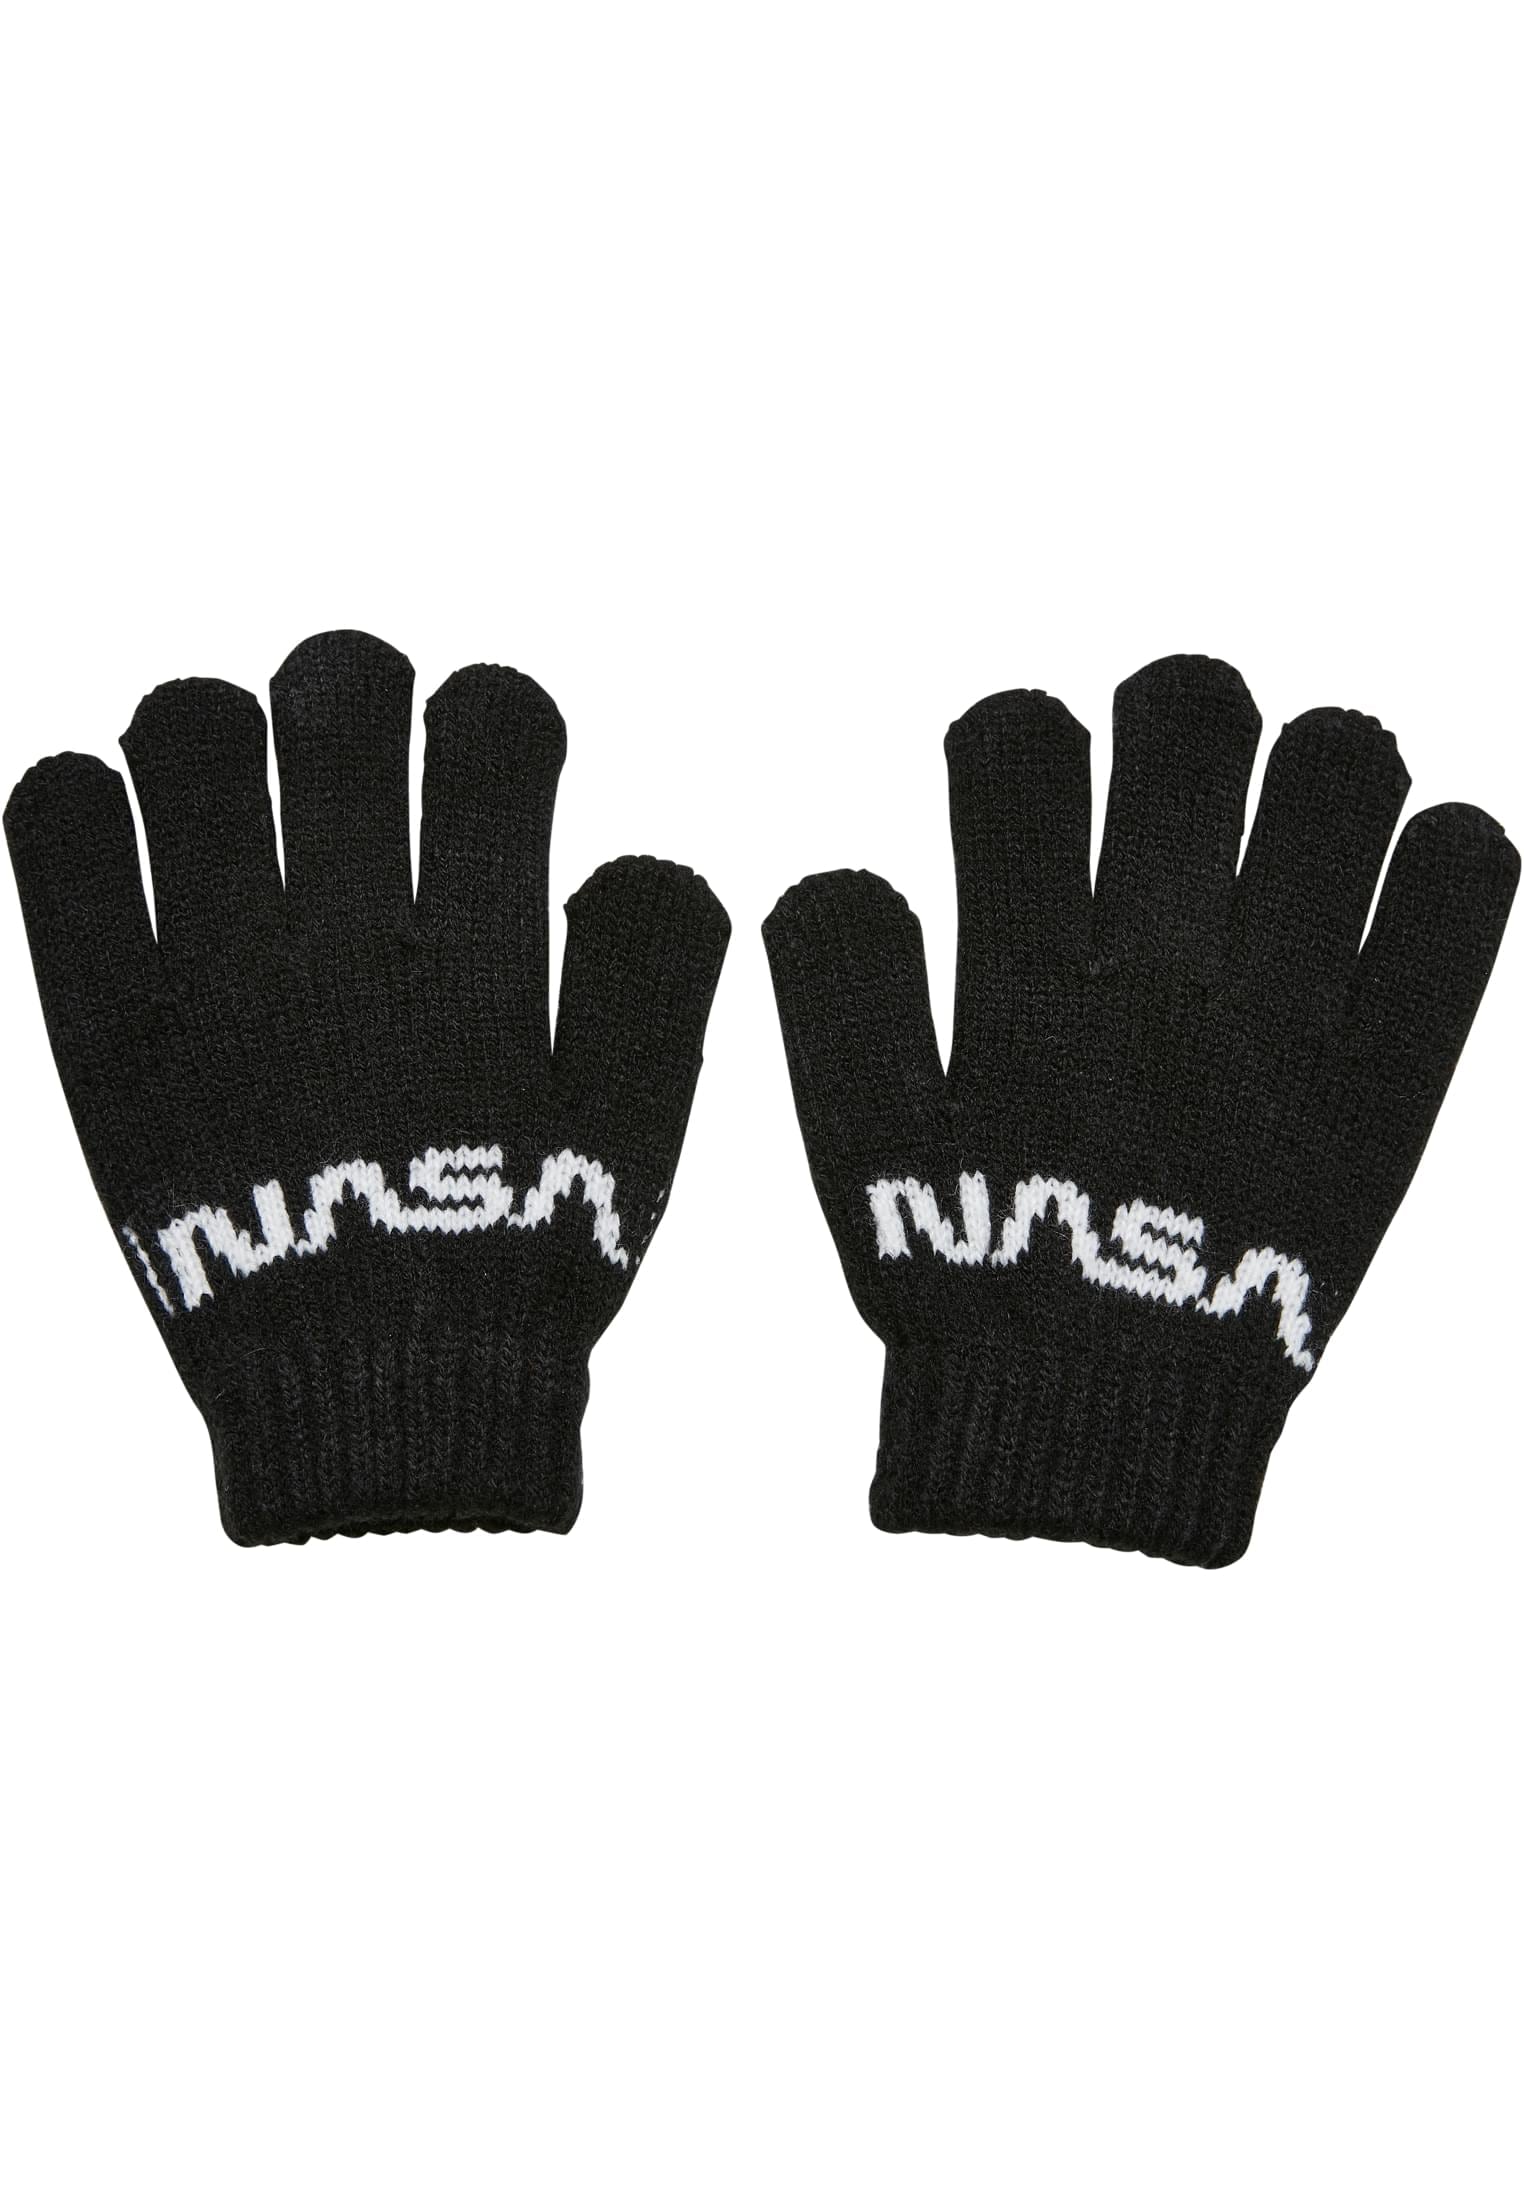 Baumwollhandschuhe NASA Glove kaufen Kids« Knit online | MisterTee »Accessoires walking I\'m